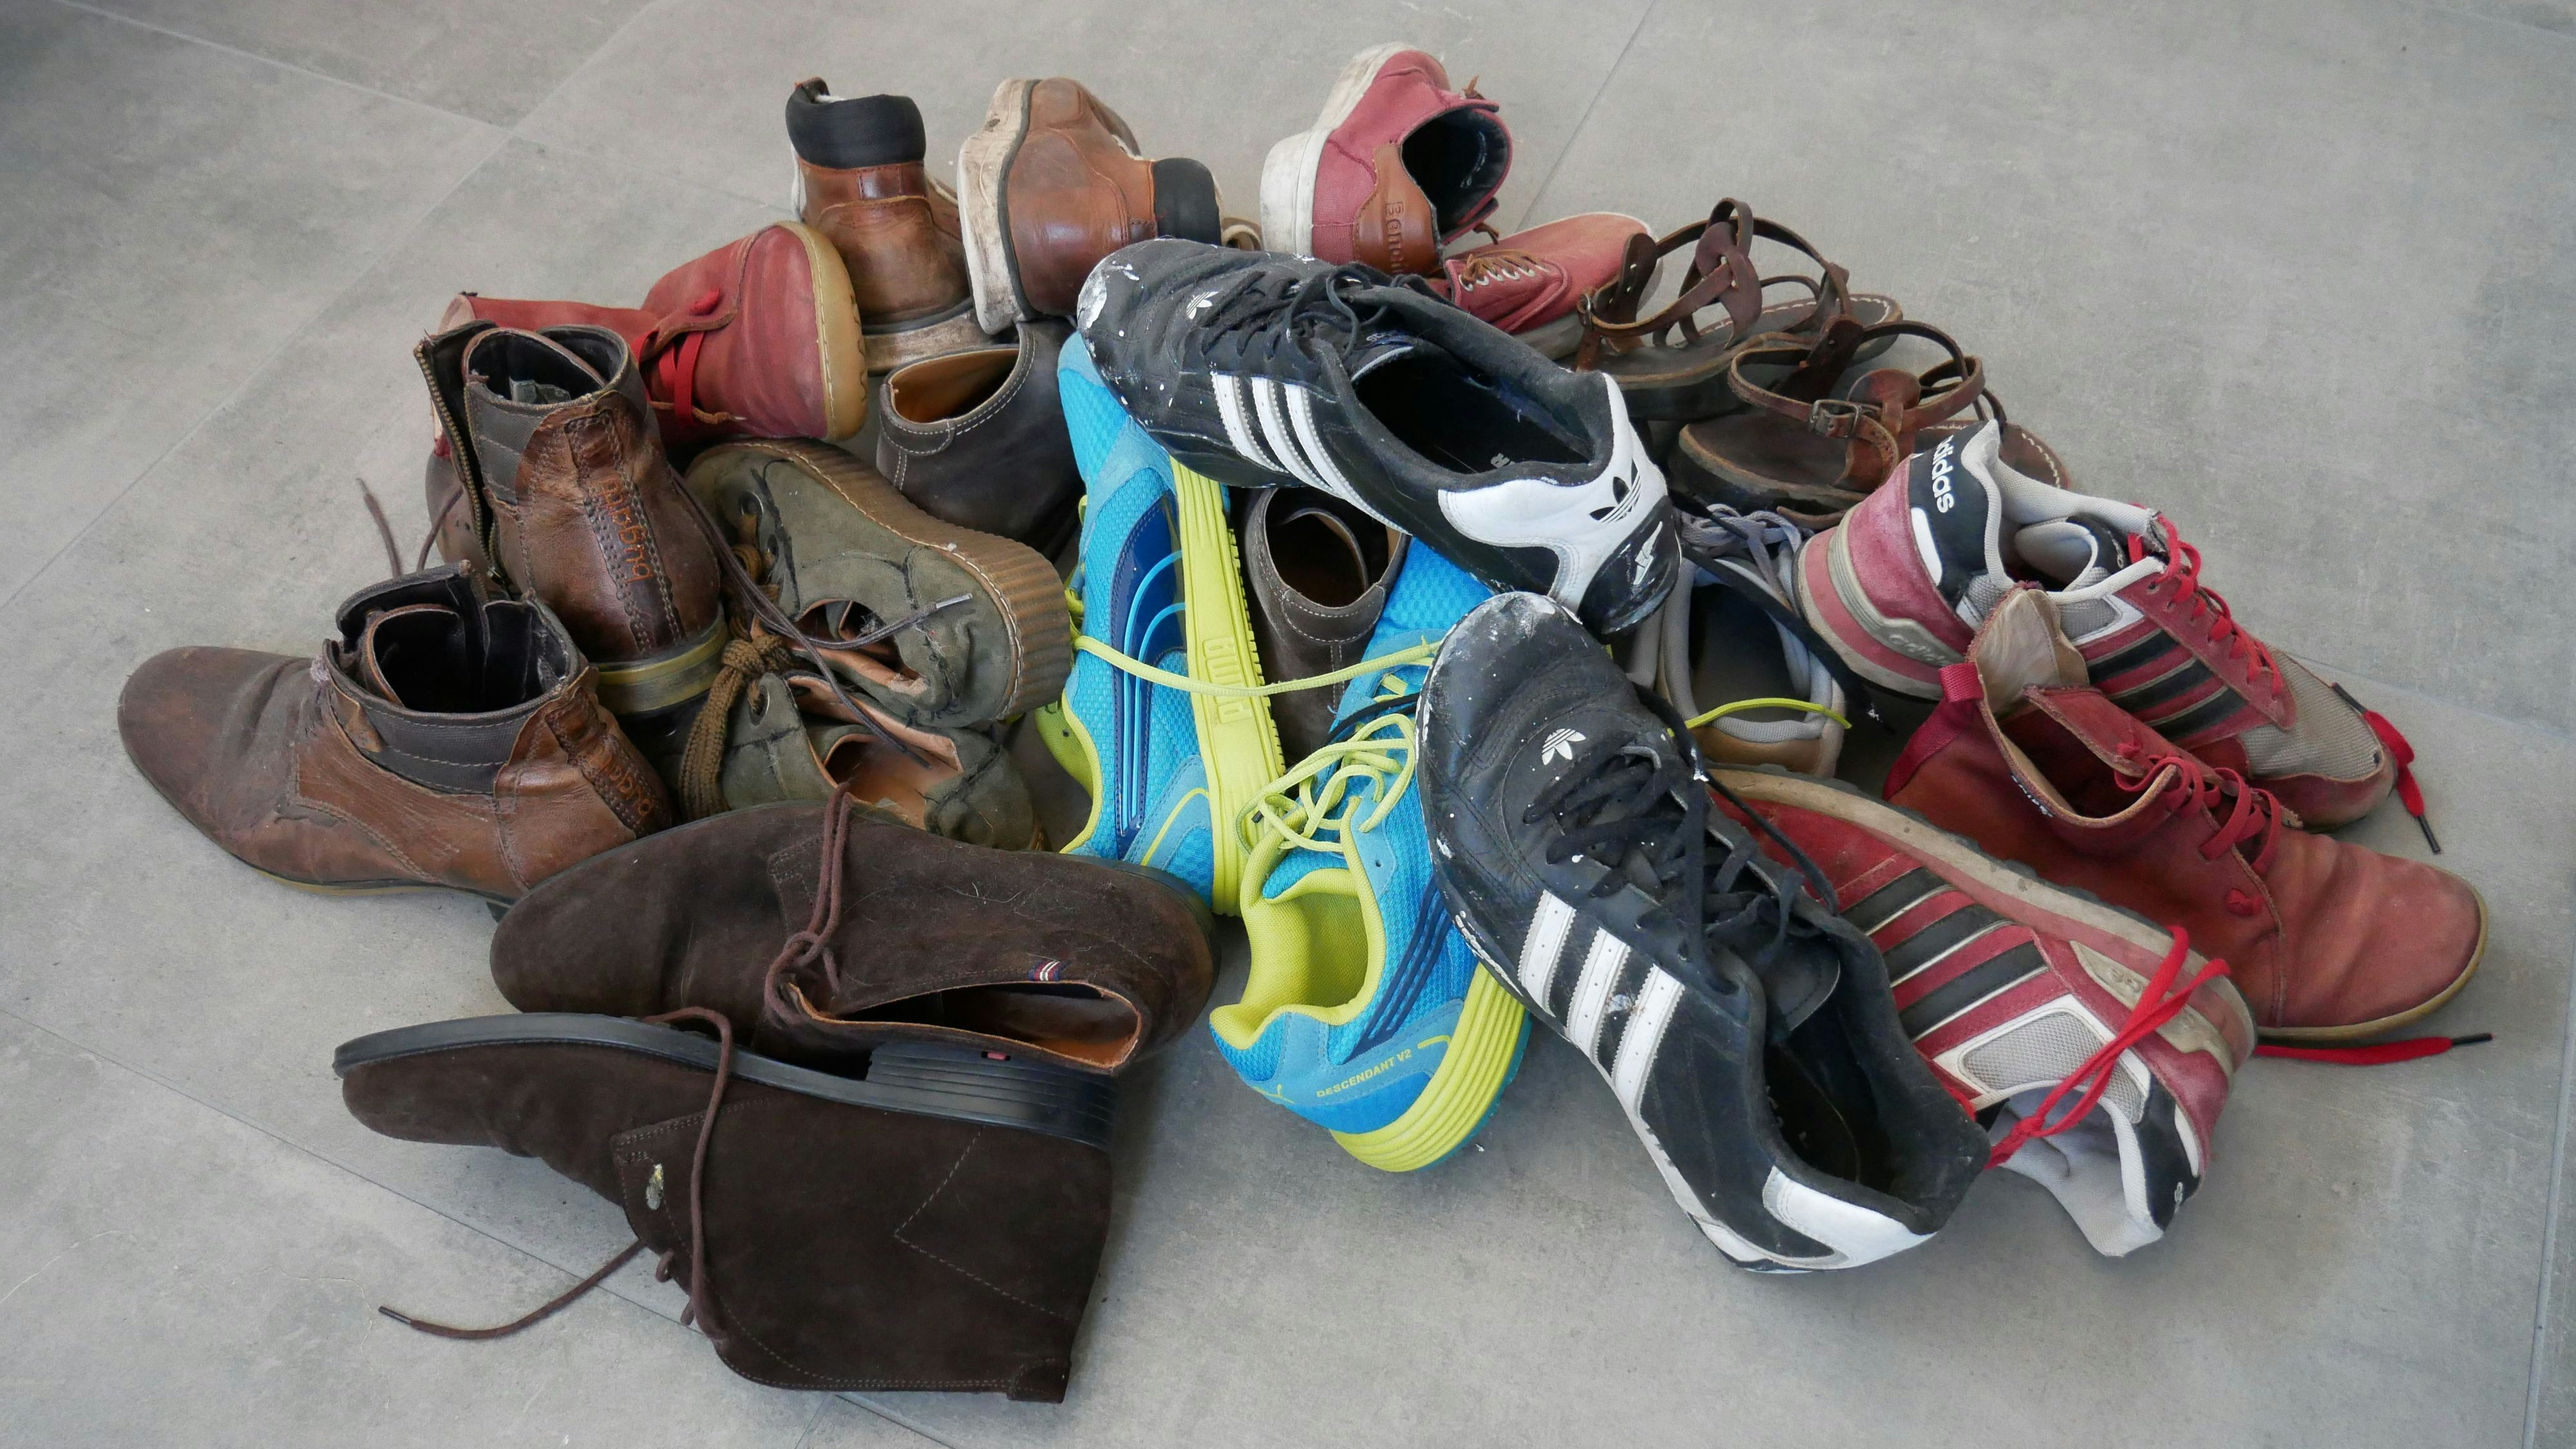 Da braucht es noch etwas mehr: Für eine Wette soll mit alten Schuhen das Körpergewicht von Bürgermeister Neidhard Varnhorn übertroffen werden. Foto: Dickerhoff